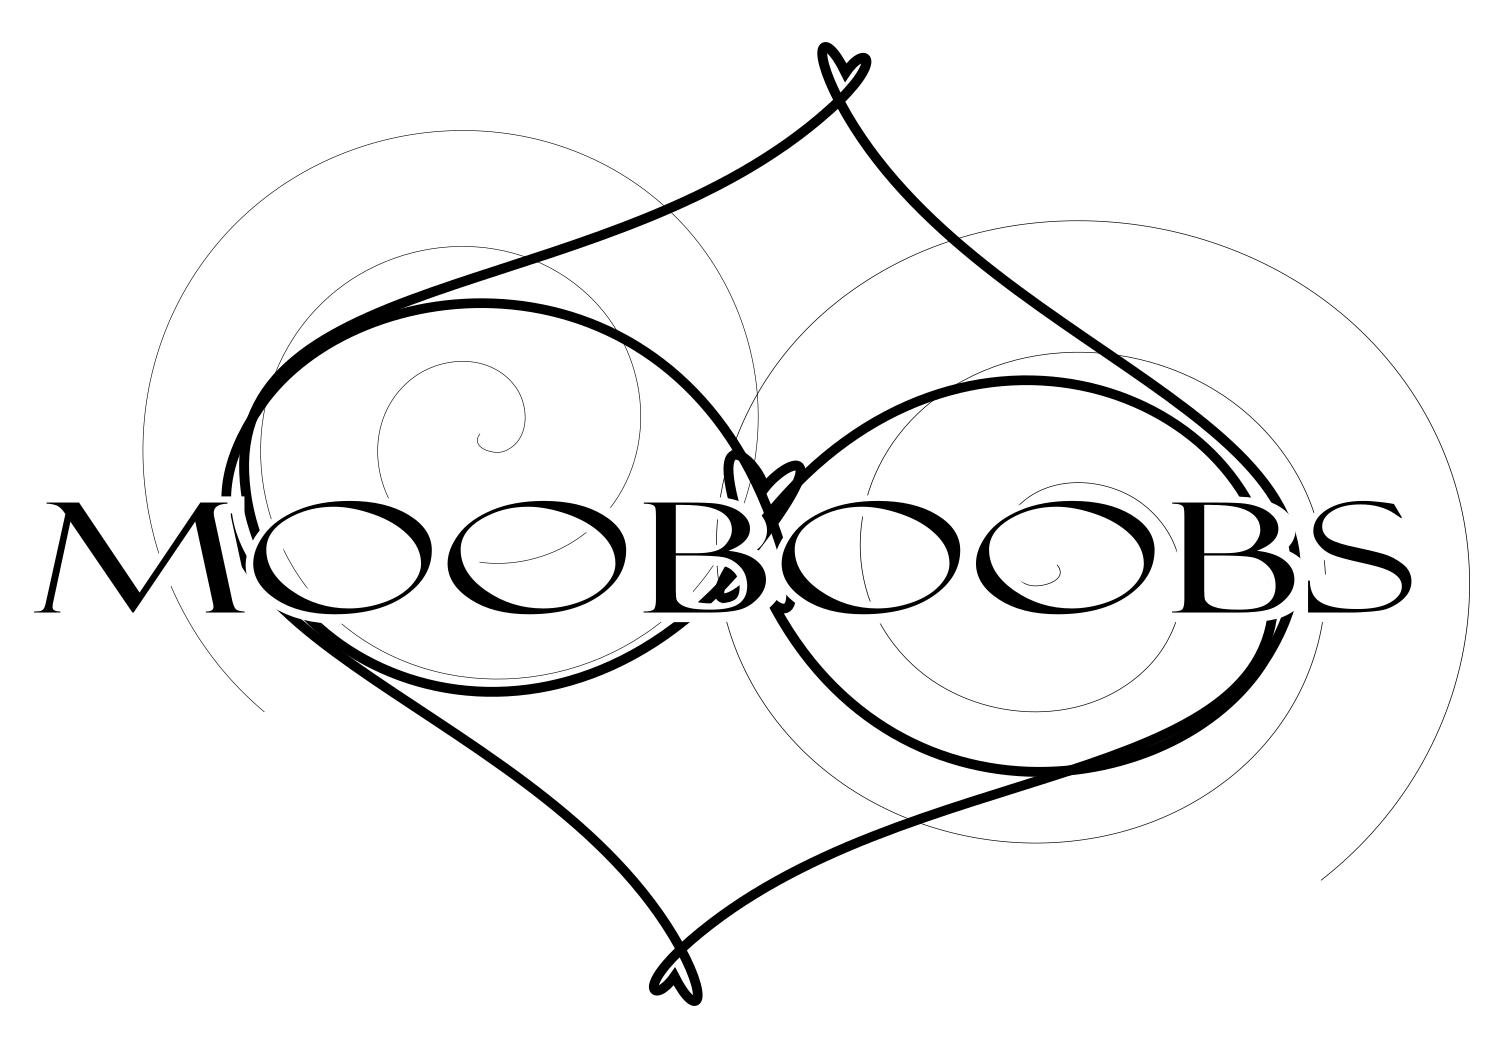 mooboobs - bras for big boobs